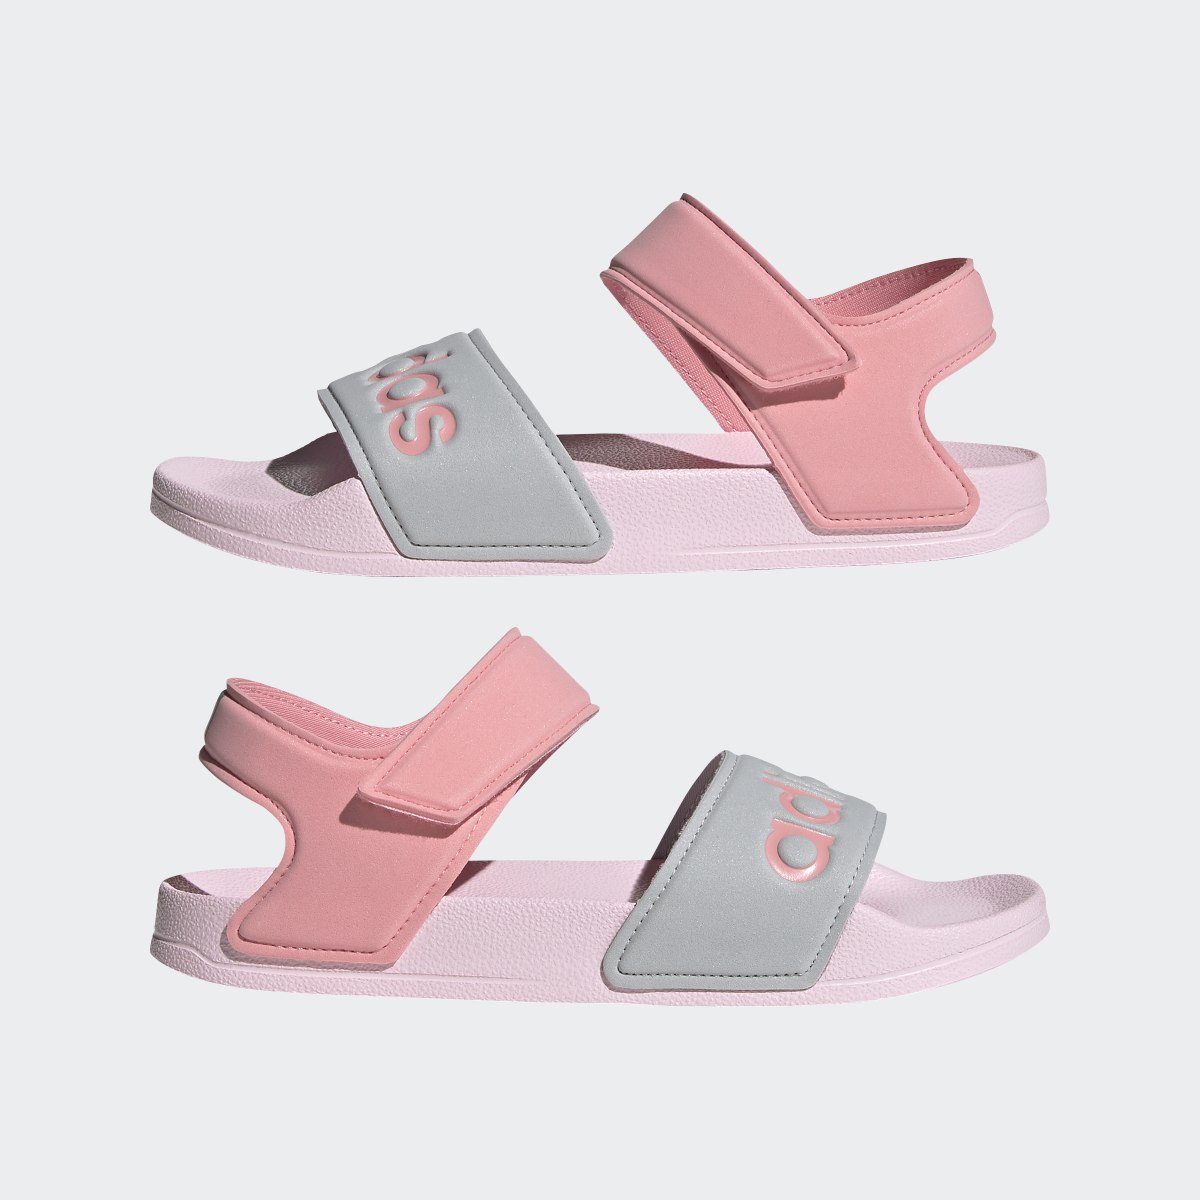 Adidas adilette Sandals. 8